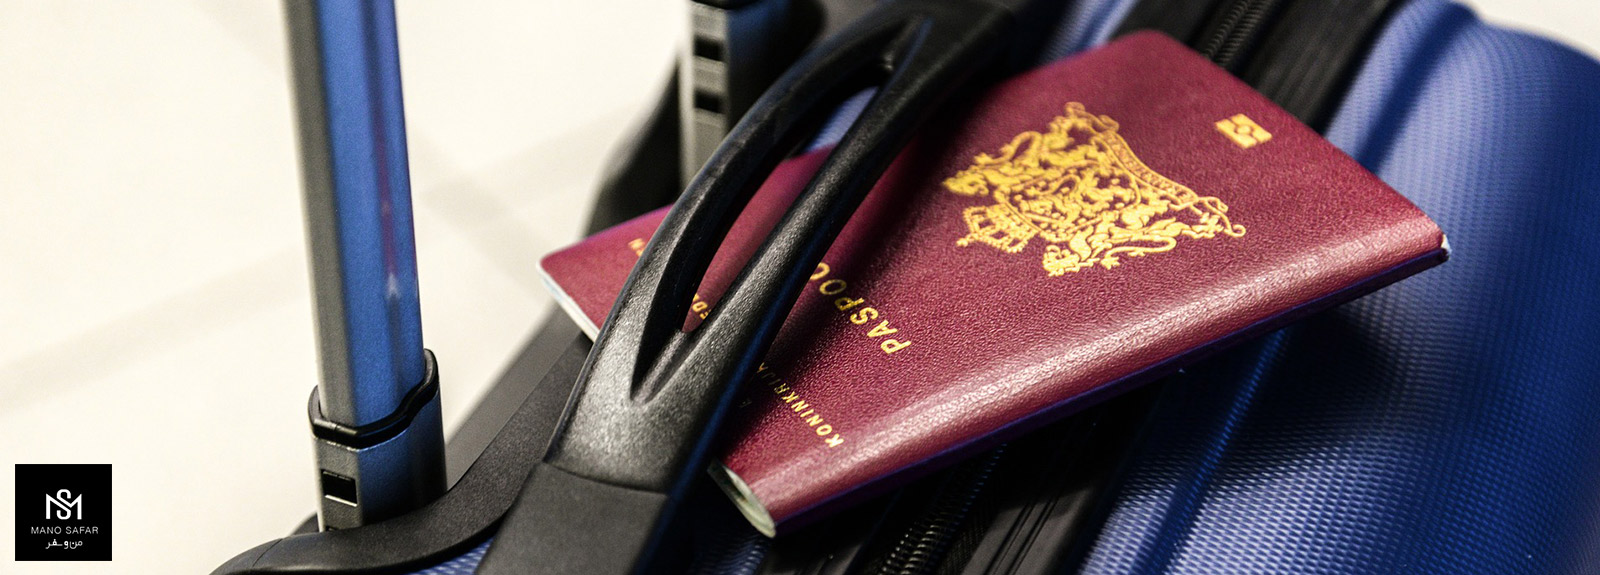 مجوز سفر الکترونیکی تجاری چیست؟ (شرایط اخذ و قوانین) Business E-Visa eta